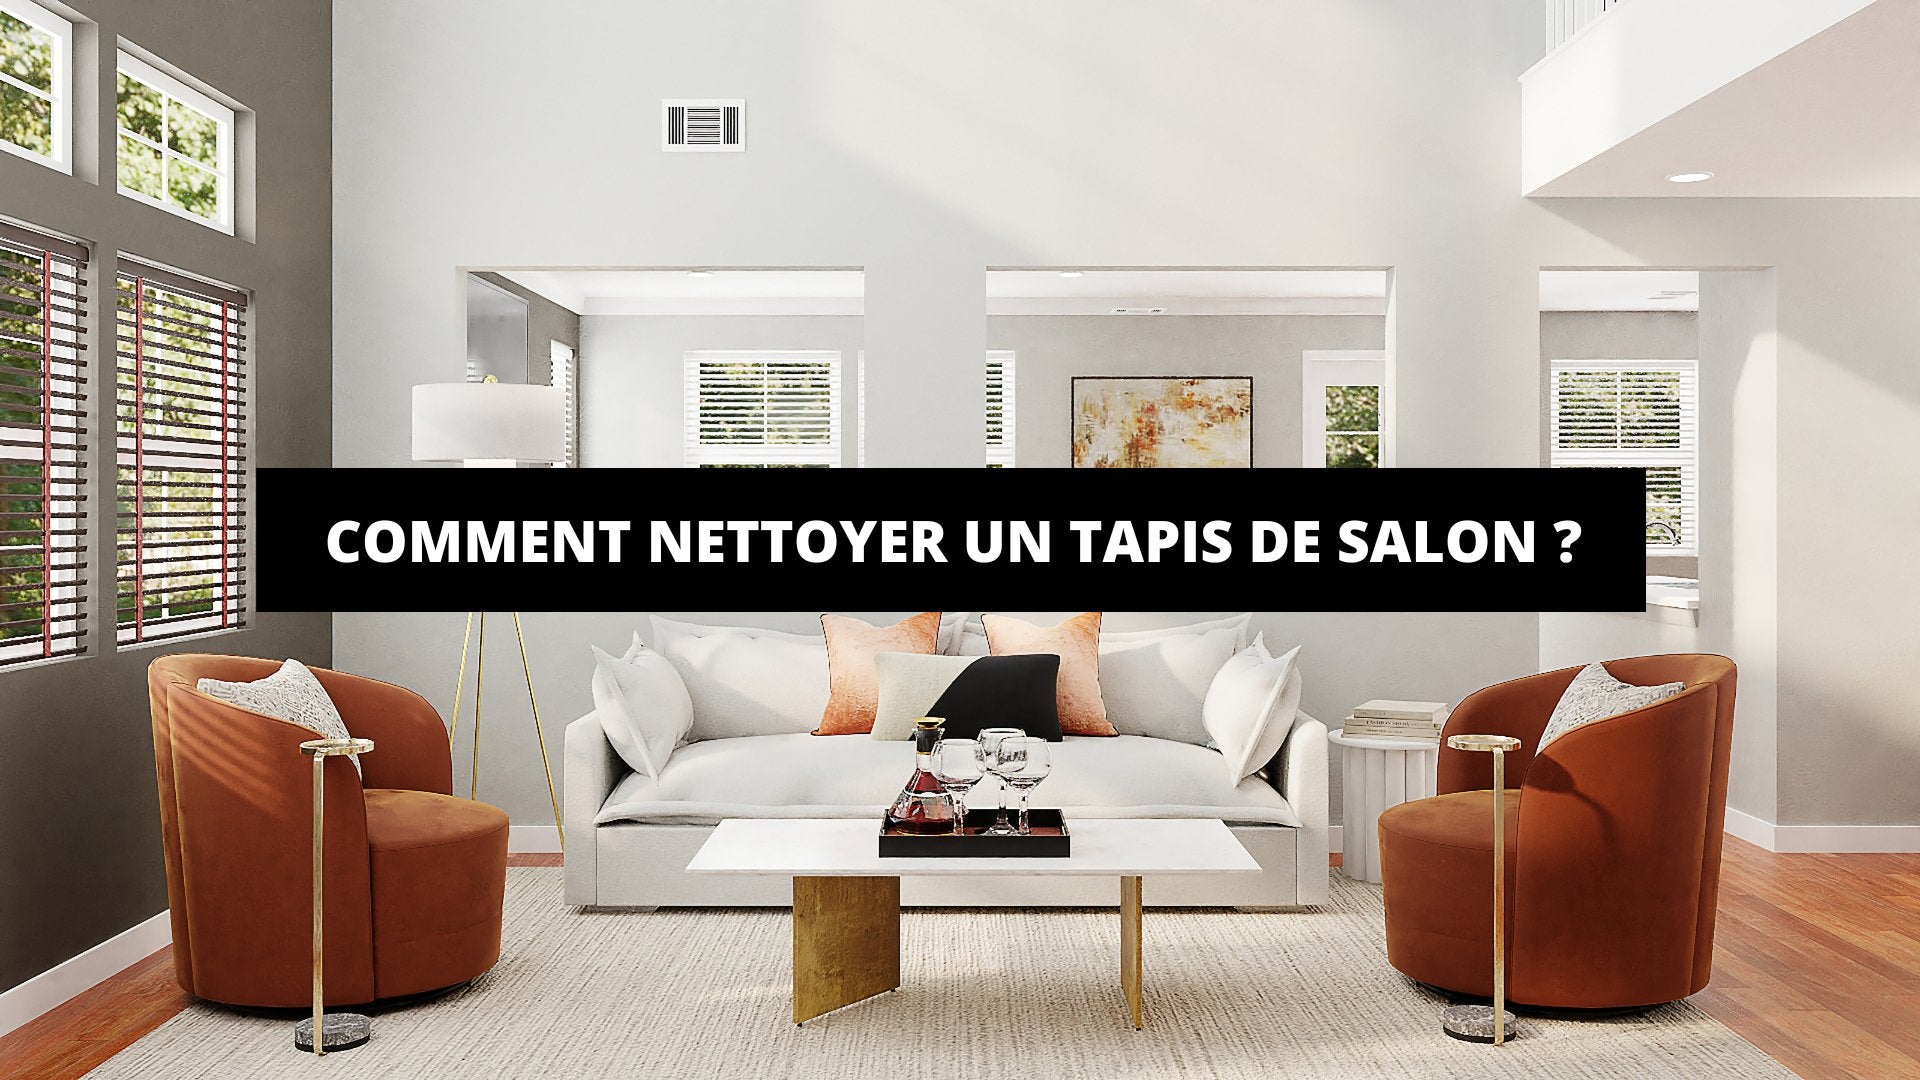 Comment Nettoyer Un Tapis De Salon ? - The Art Avenue